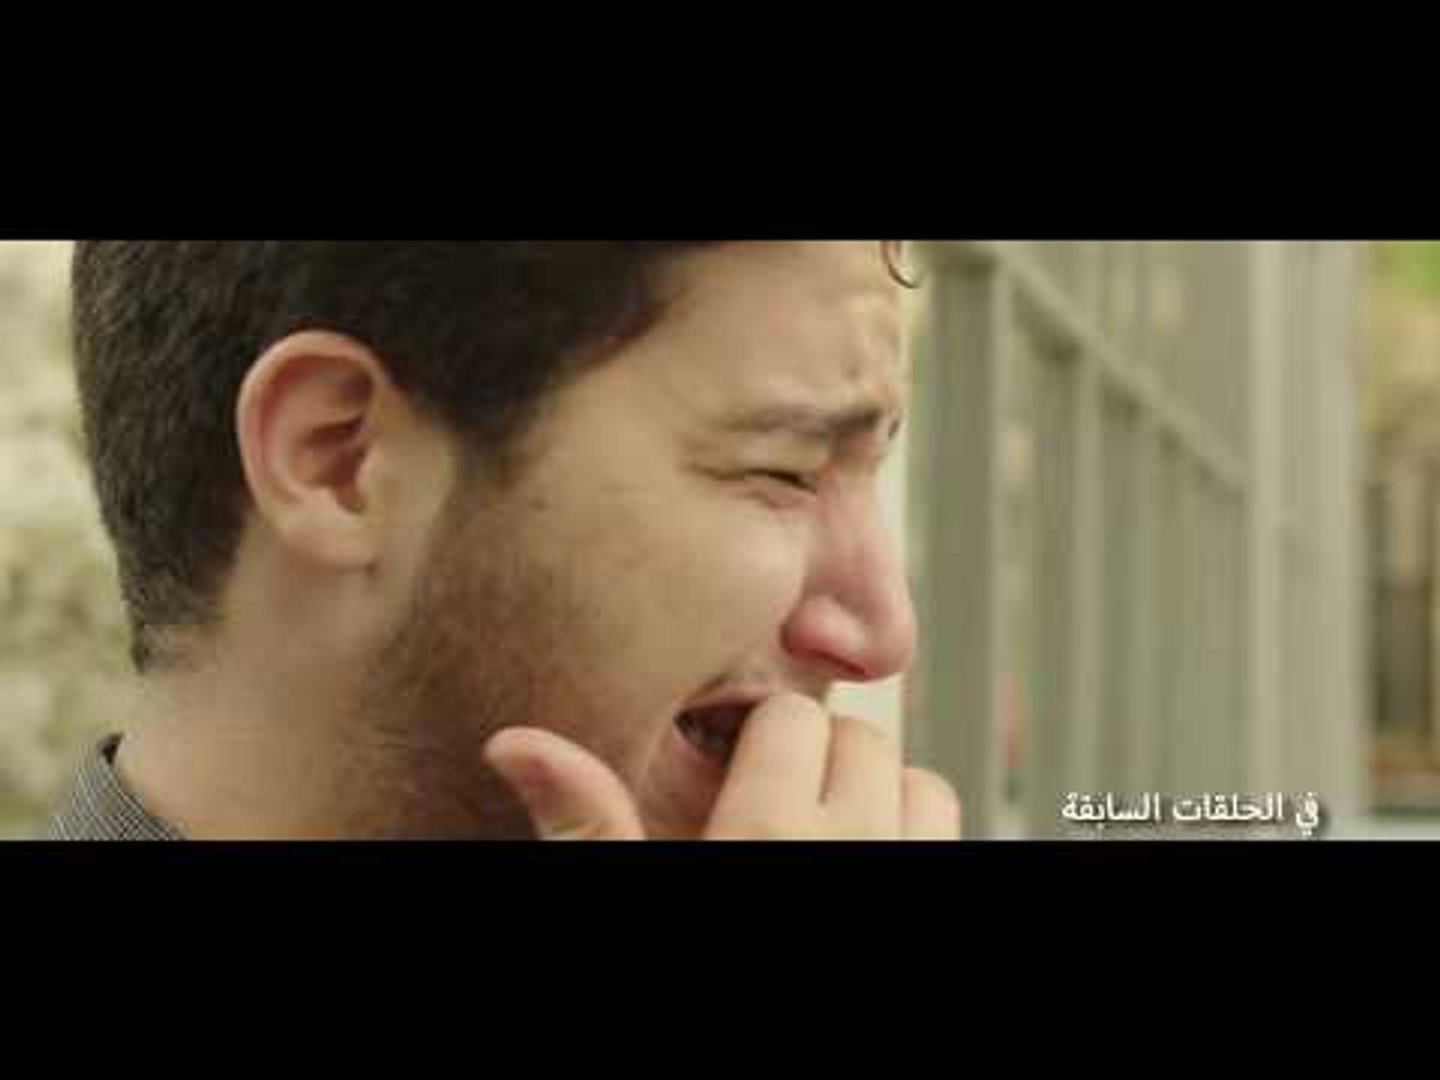 مسلسل لا تطفئ الشمس - الحلقة الرابعة والعشرون | La totfe' Al chams - Eps 24  - فيديو Dailymotion